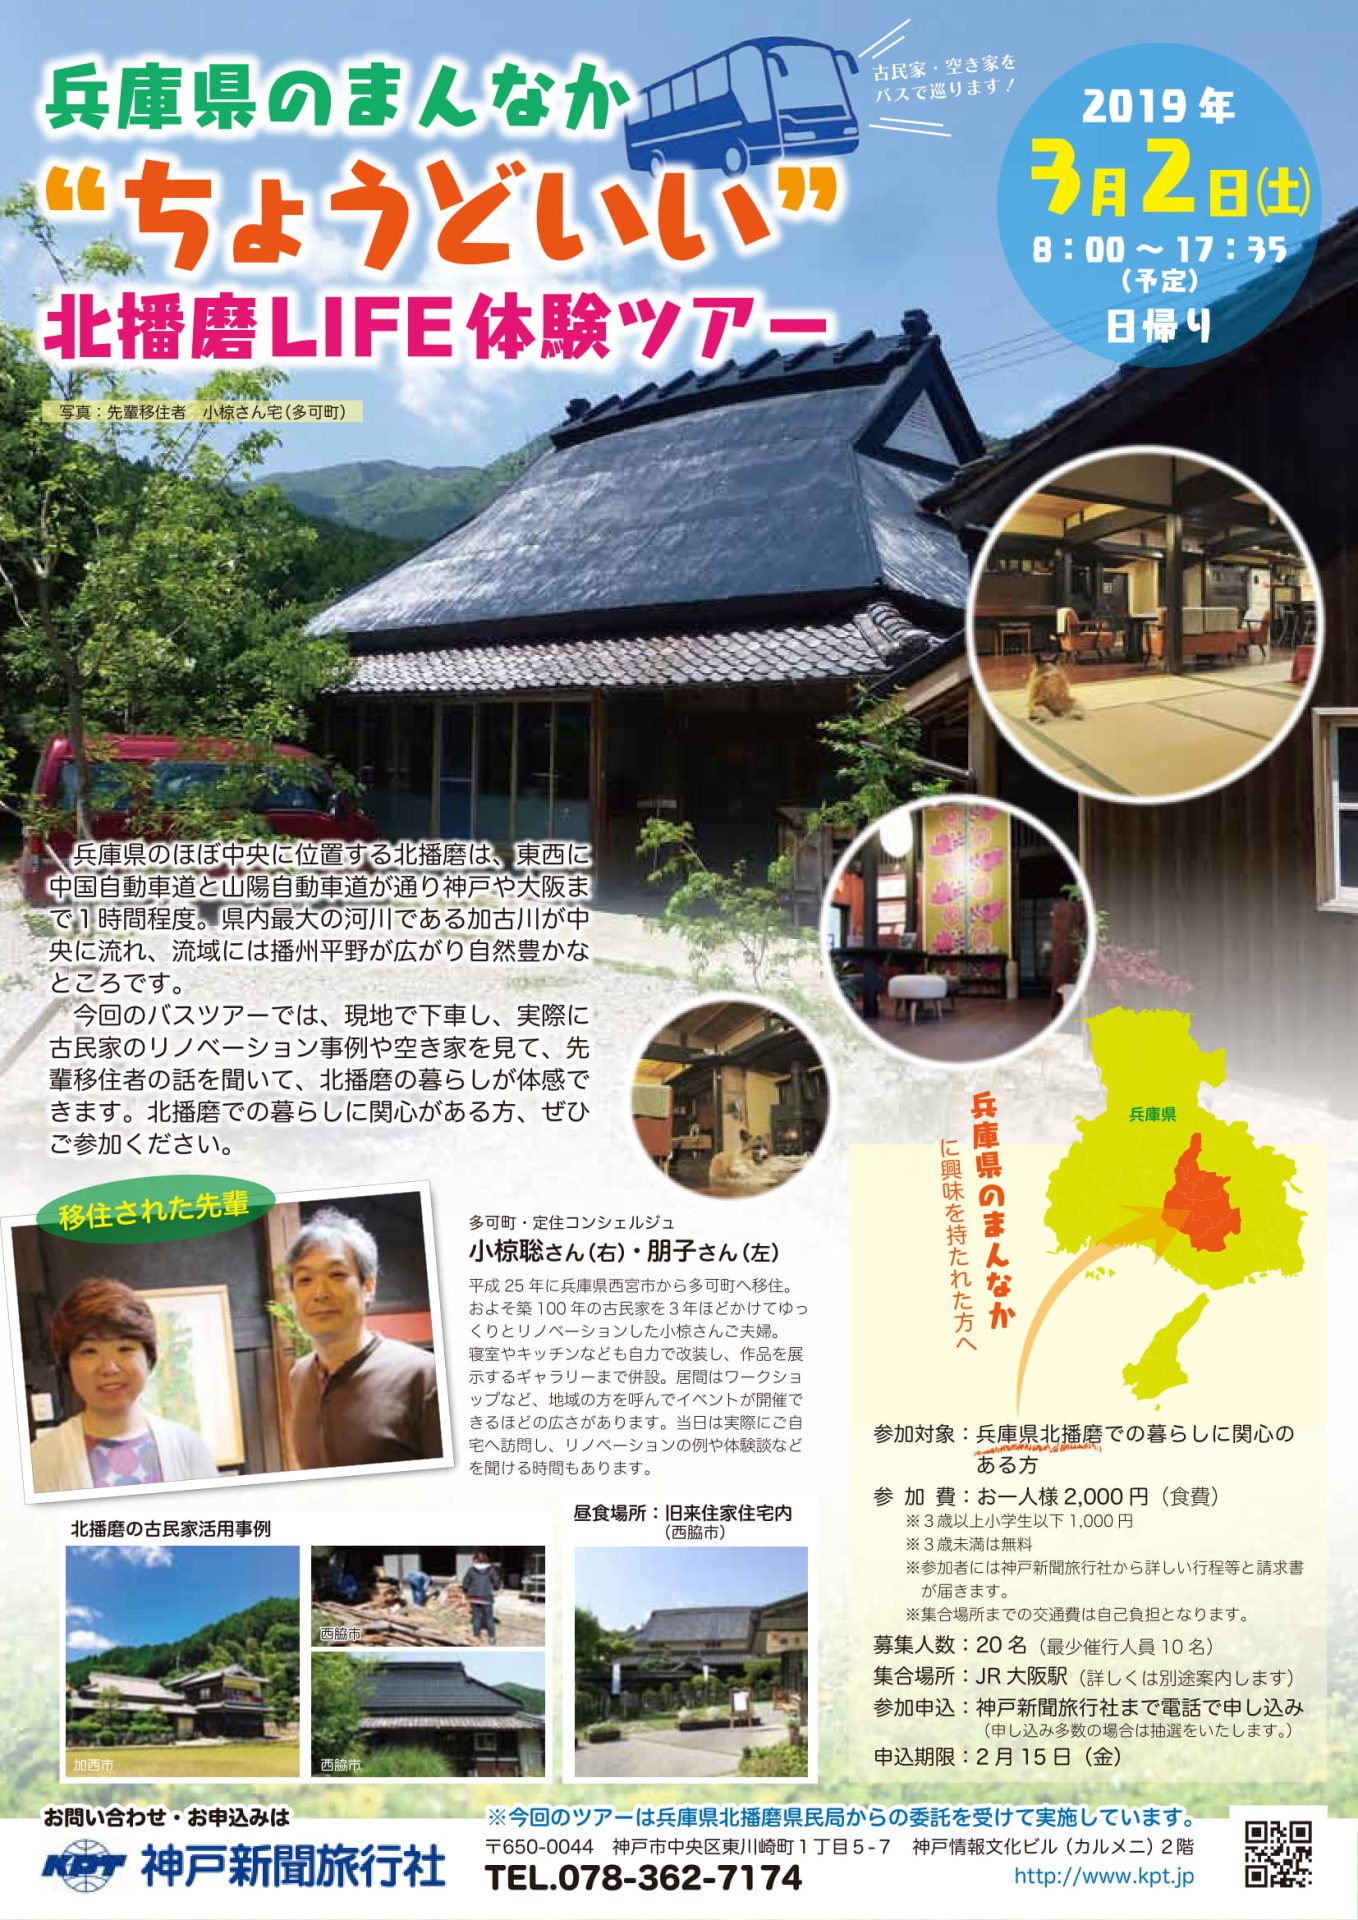 兵庫県のまんなか “ちょうどいい” 北播磨LIFE体験ツアー | 移住関連イベント情報